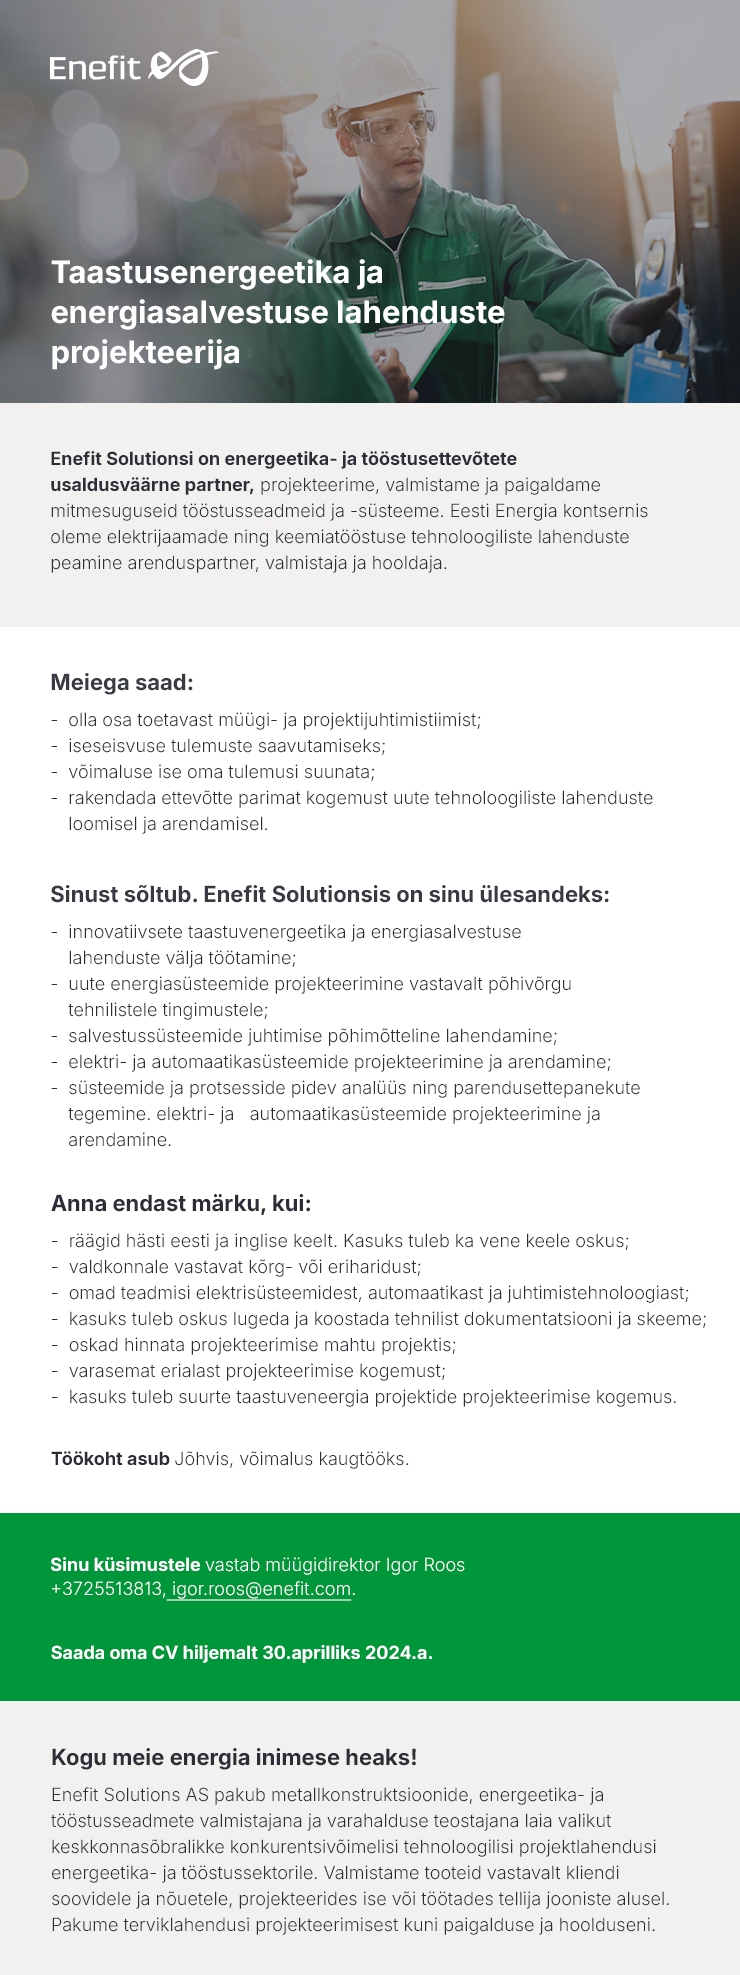 Eesti Energia AS Taastuvenergeetika ja energiasalvestuse lahenduste projekteerija